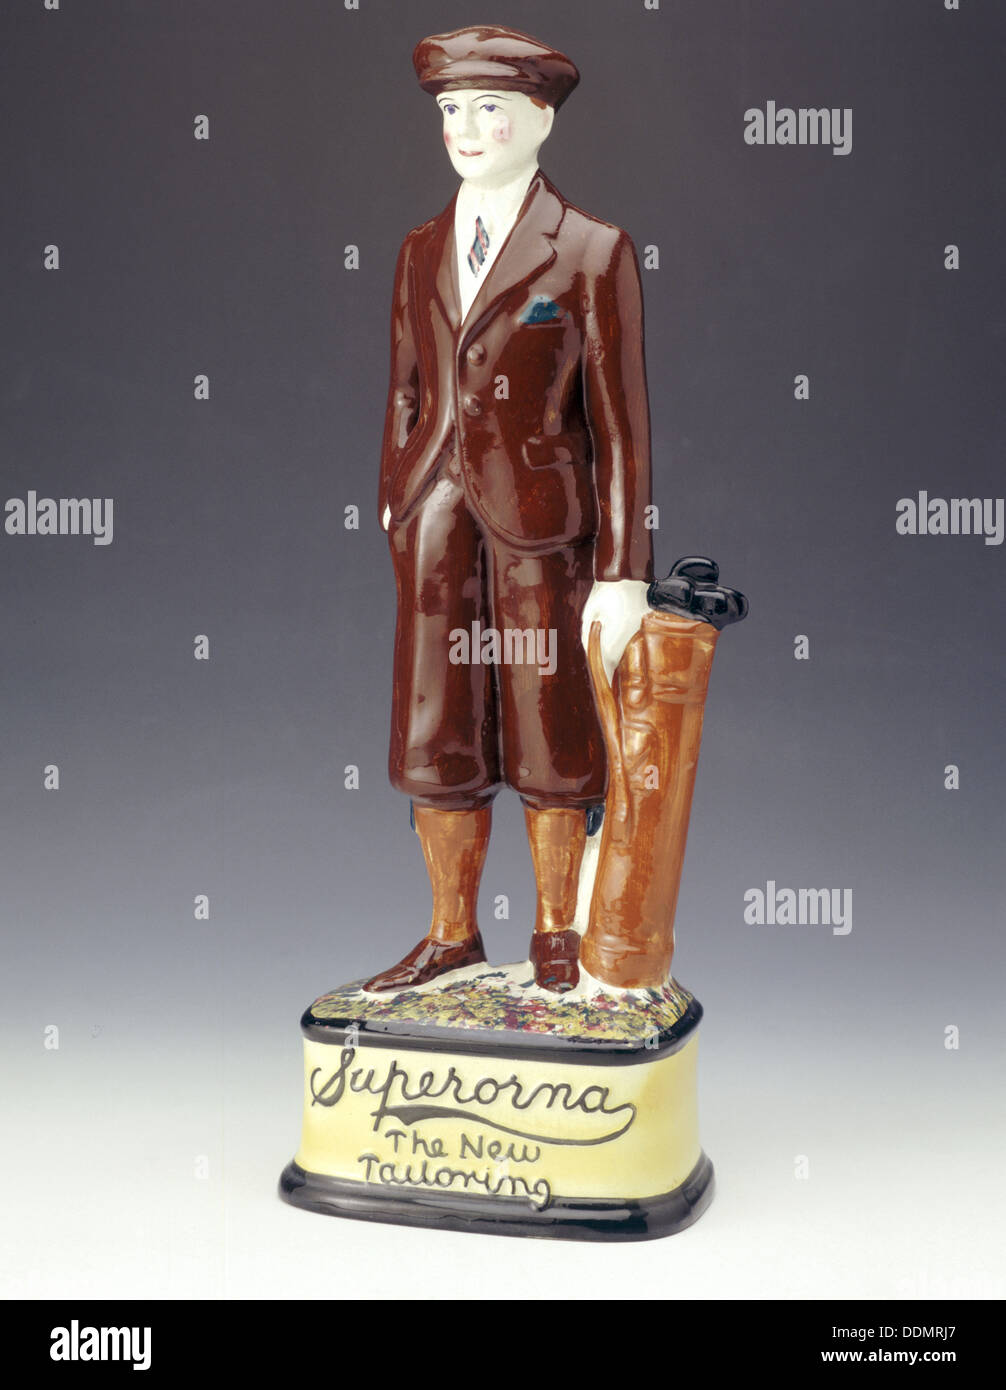 Töpferei Abbildung eines Golfspielers Werbung Superorna Tailoring, 1920er Jahre. Artist: Unbekannt Stockfoto